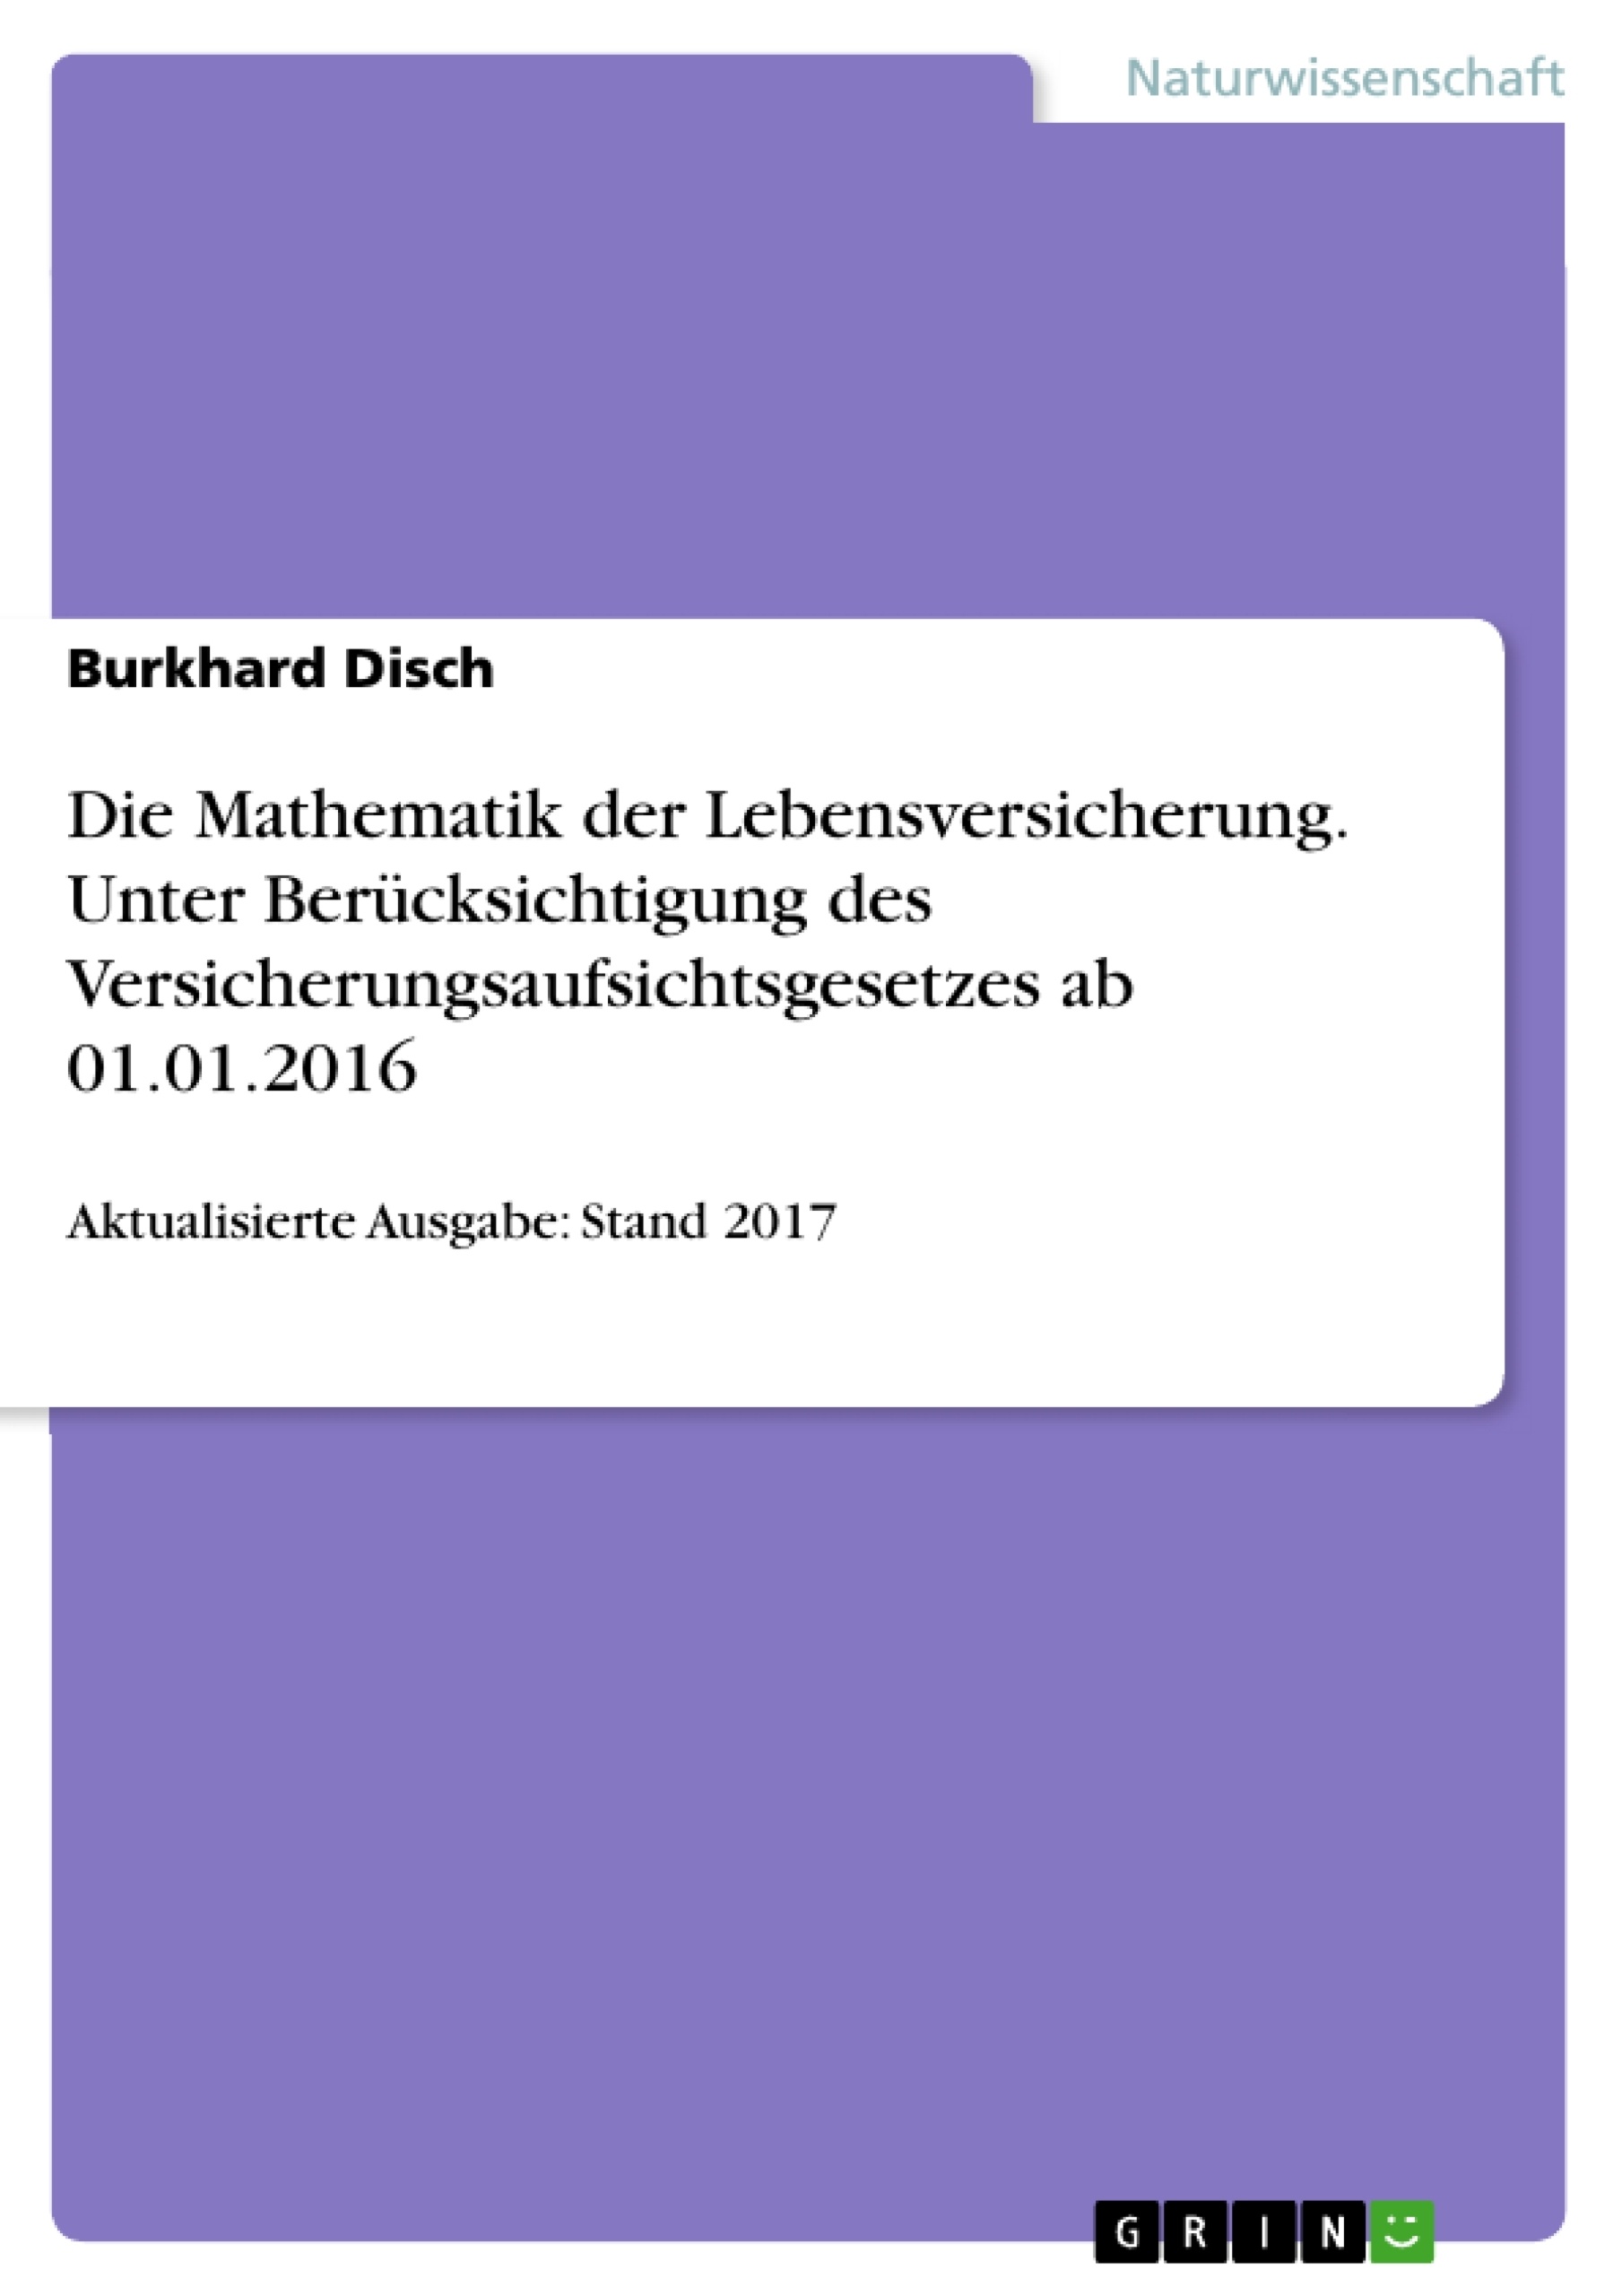 Título: Die Mathematik der Lebensversicherung. Unter Berücksichtigung des Versicherungsaufsichtsgesetzes ab 01.01.2016